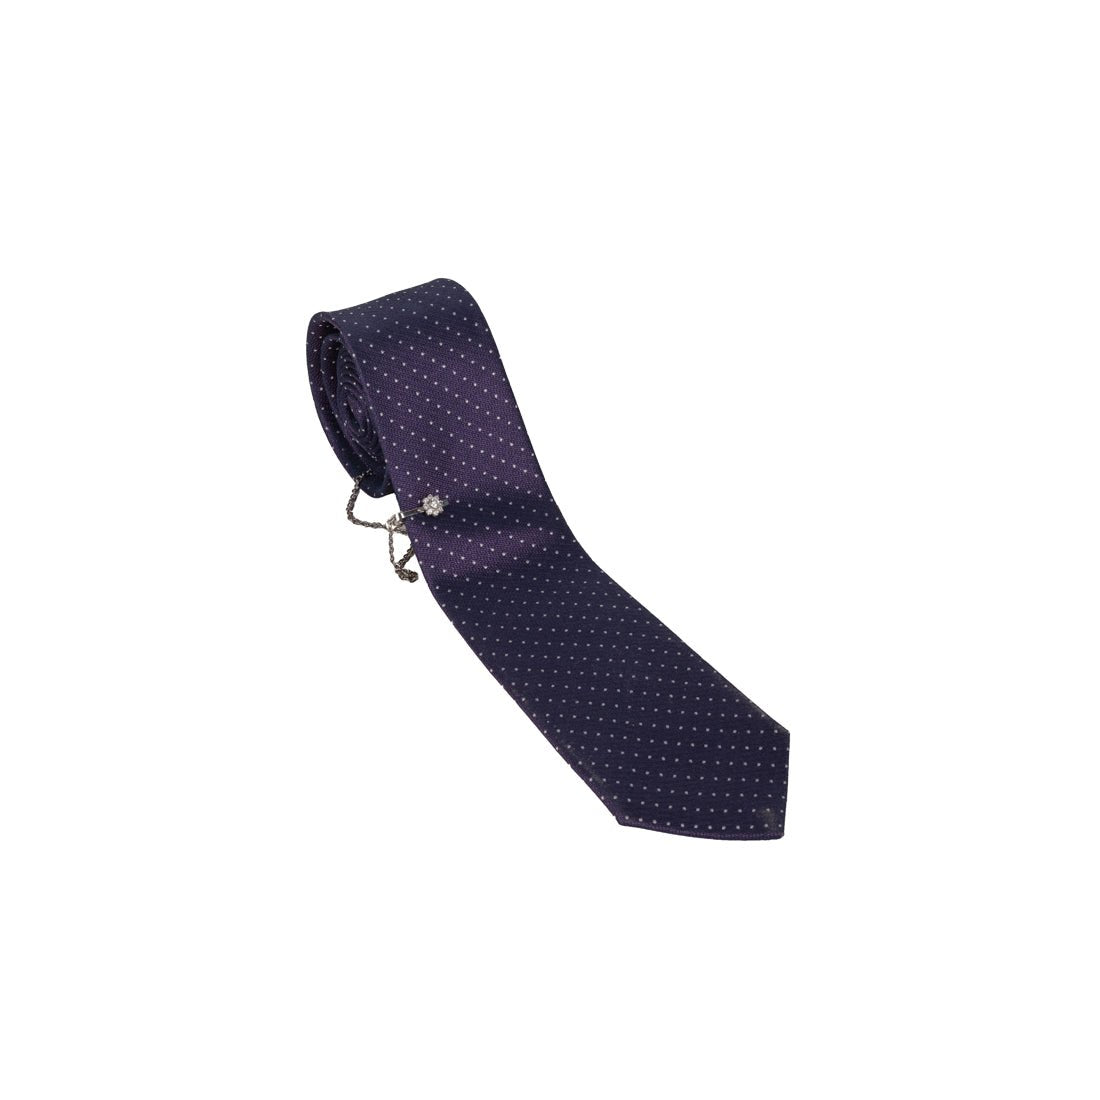 Elegant Tie - mymadstore.com